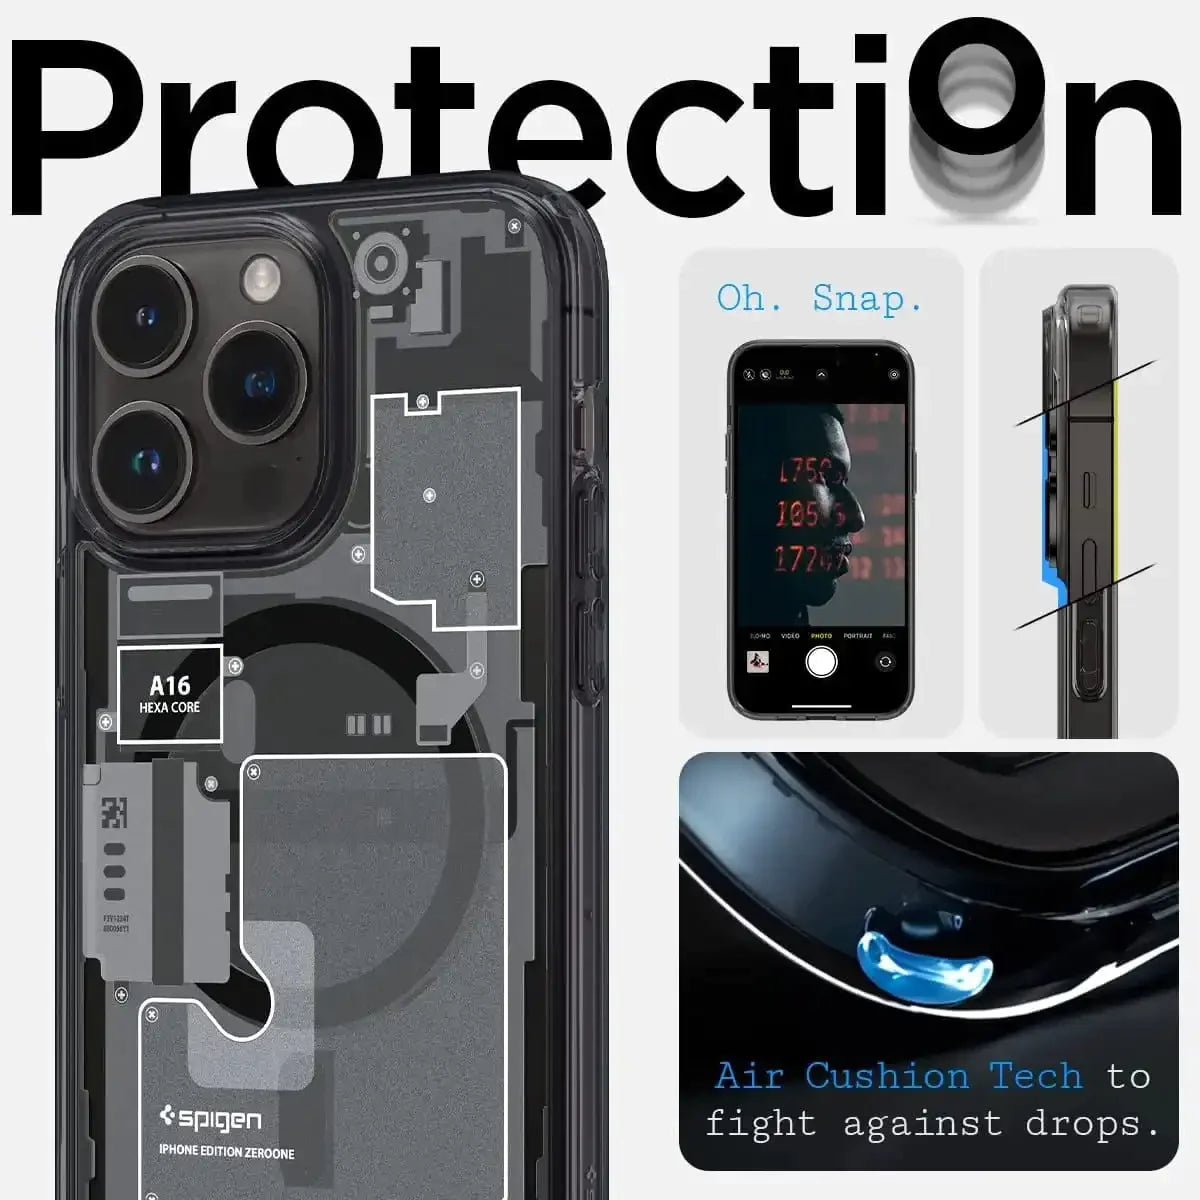 iPhone 12 Pro Ultra Hybrid Zero One MagFit MagSafe Matte Shine Case